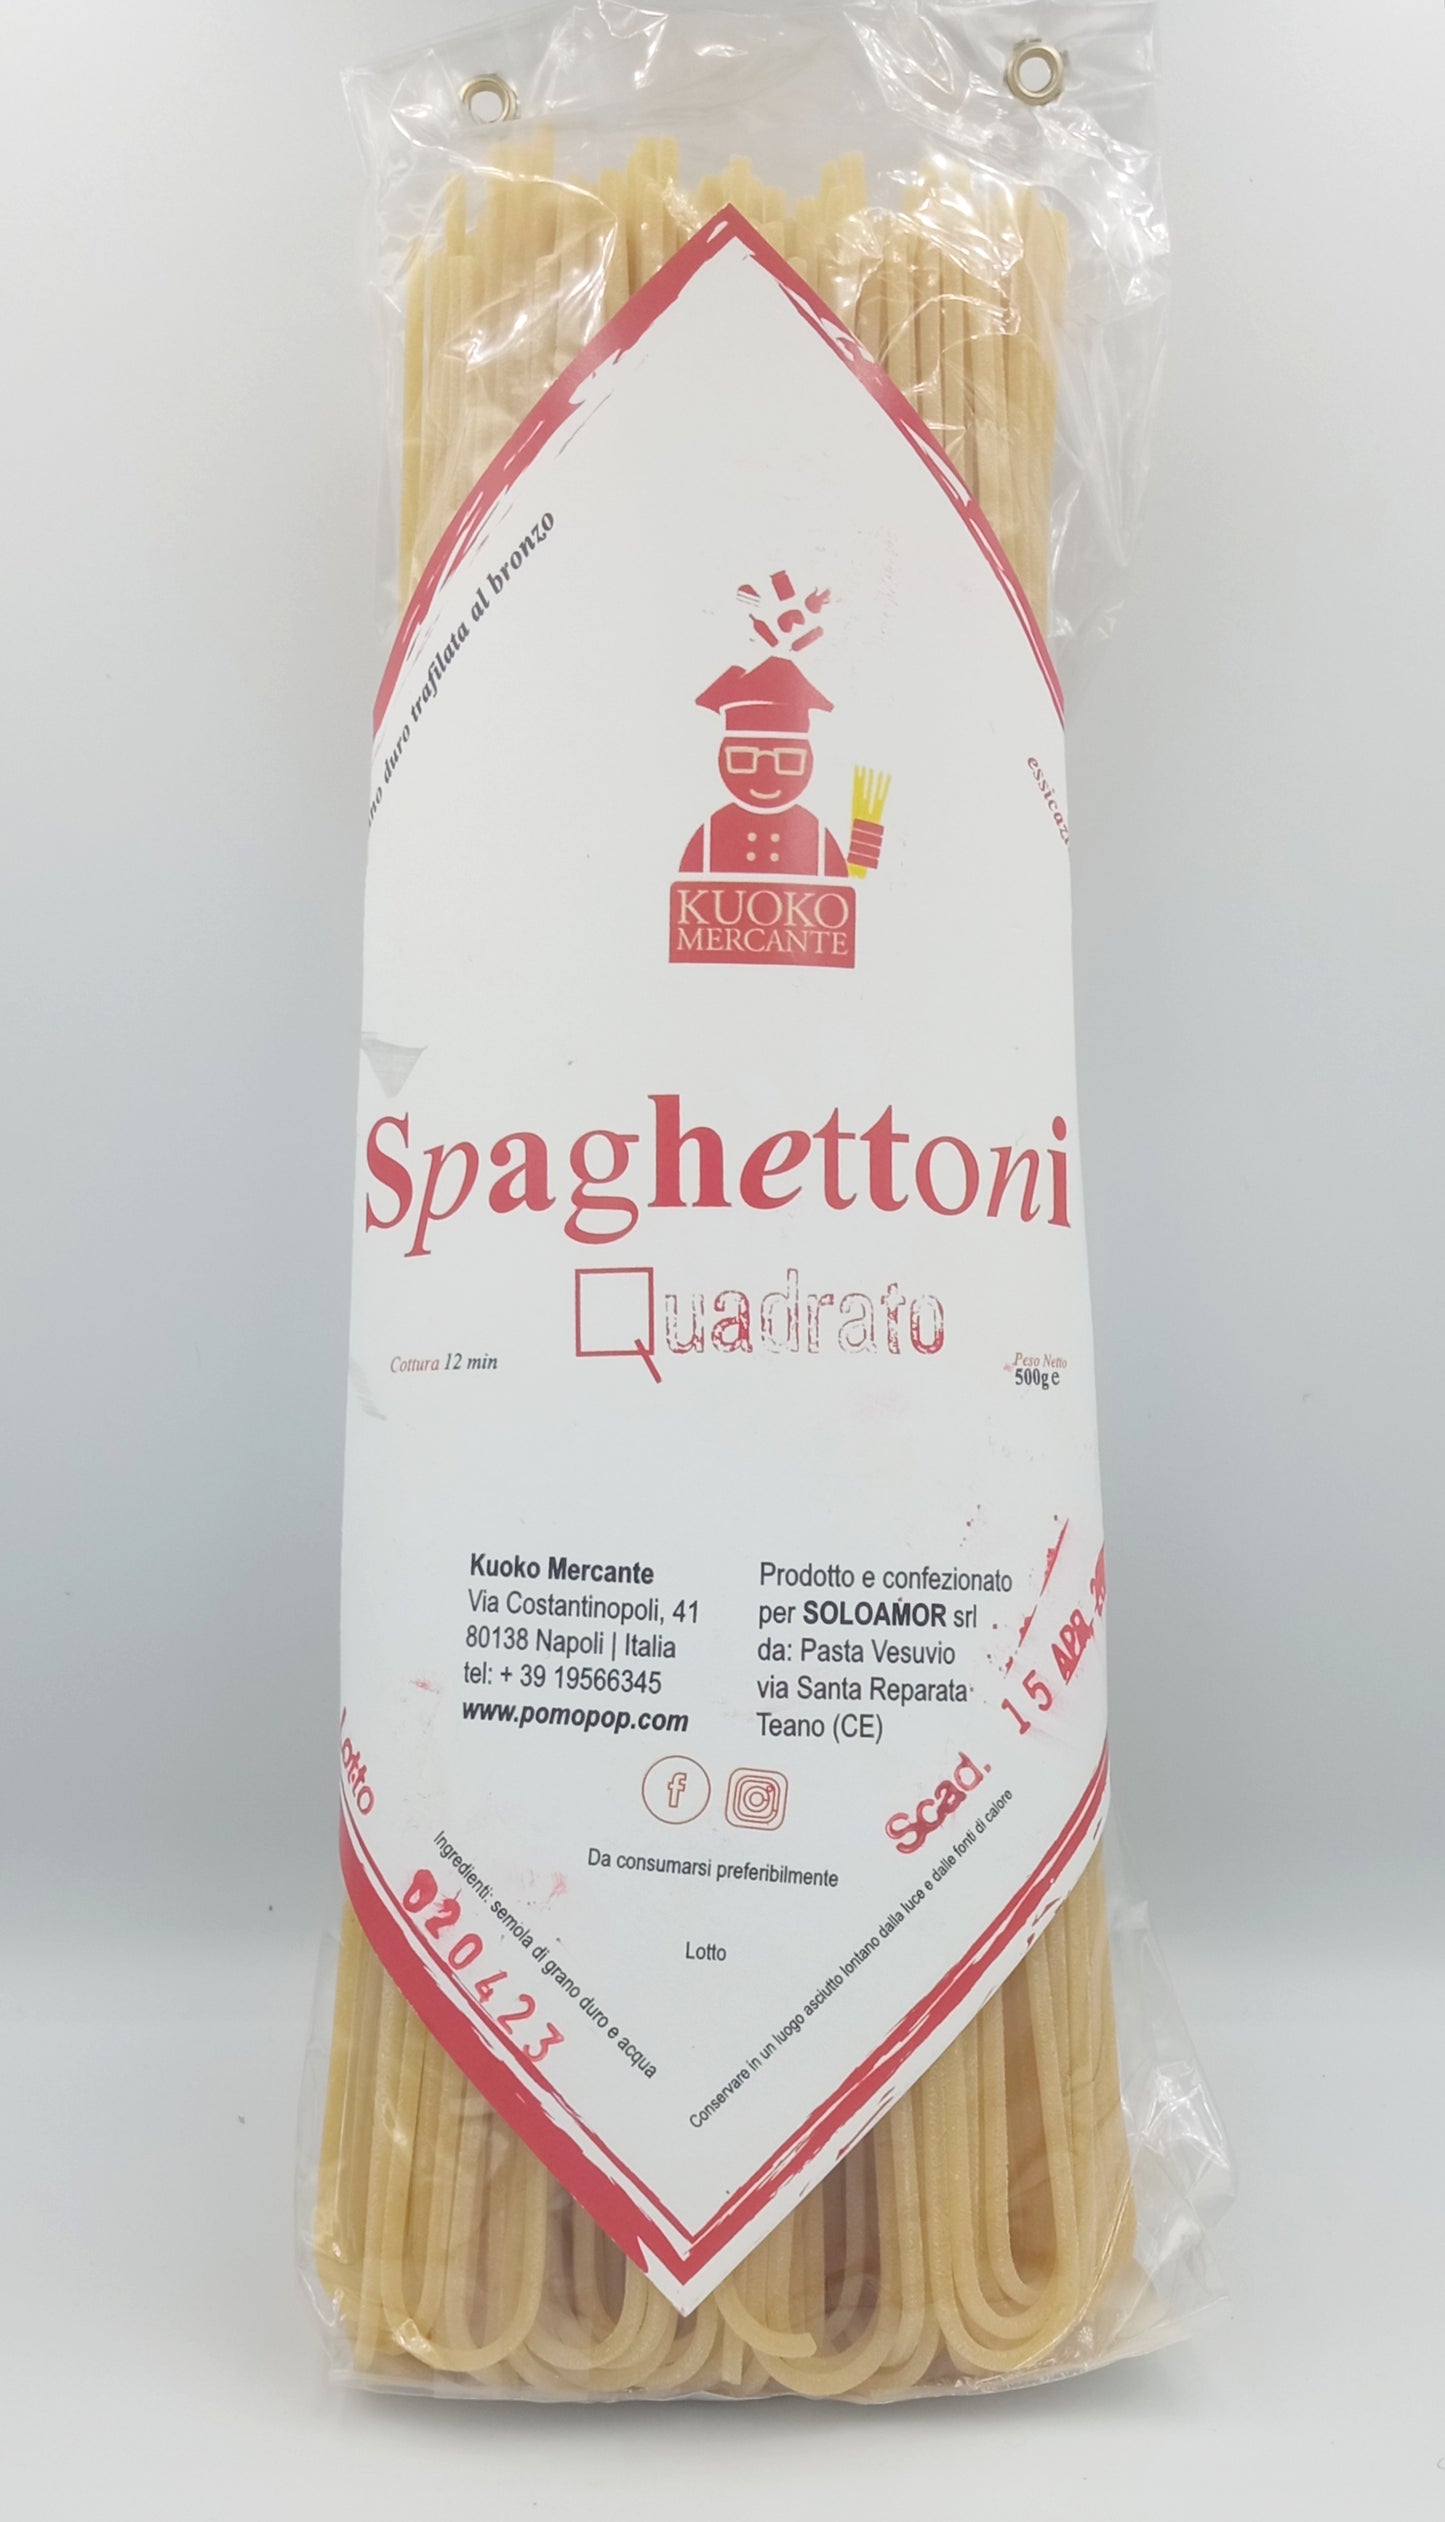 Spaghettone quadrato 500g. - Drugstore Napoli